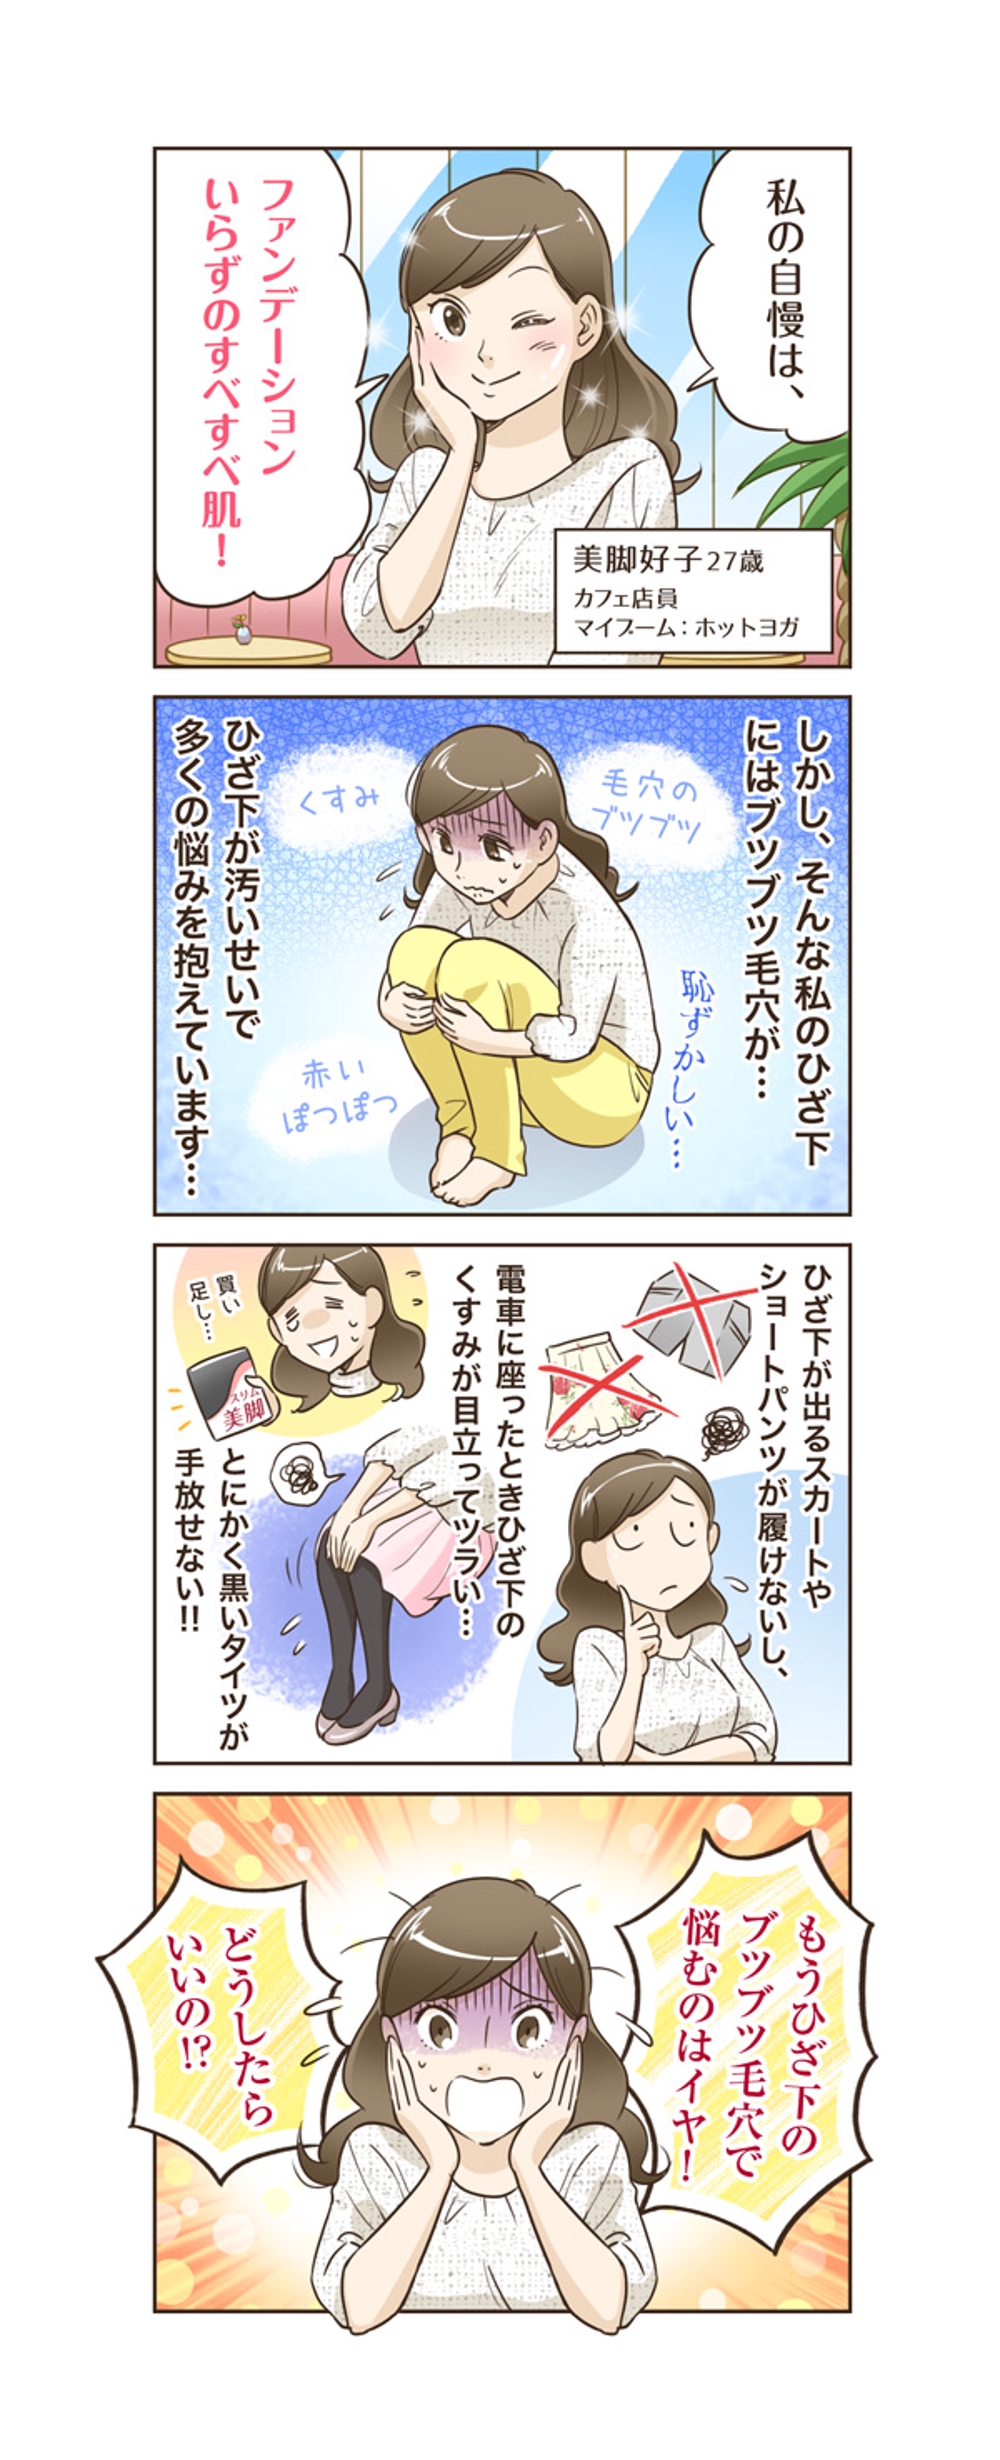 美容系4コマ漫画 ポートフォリオ デザイナー ランサーズ